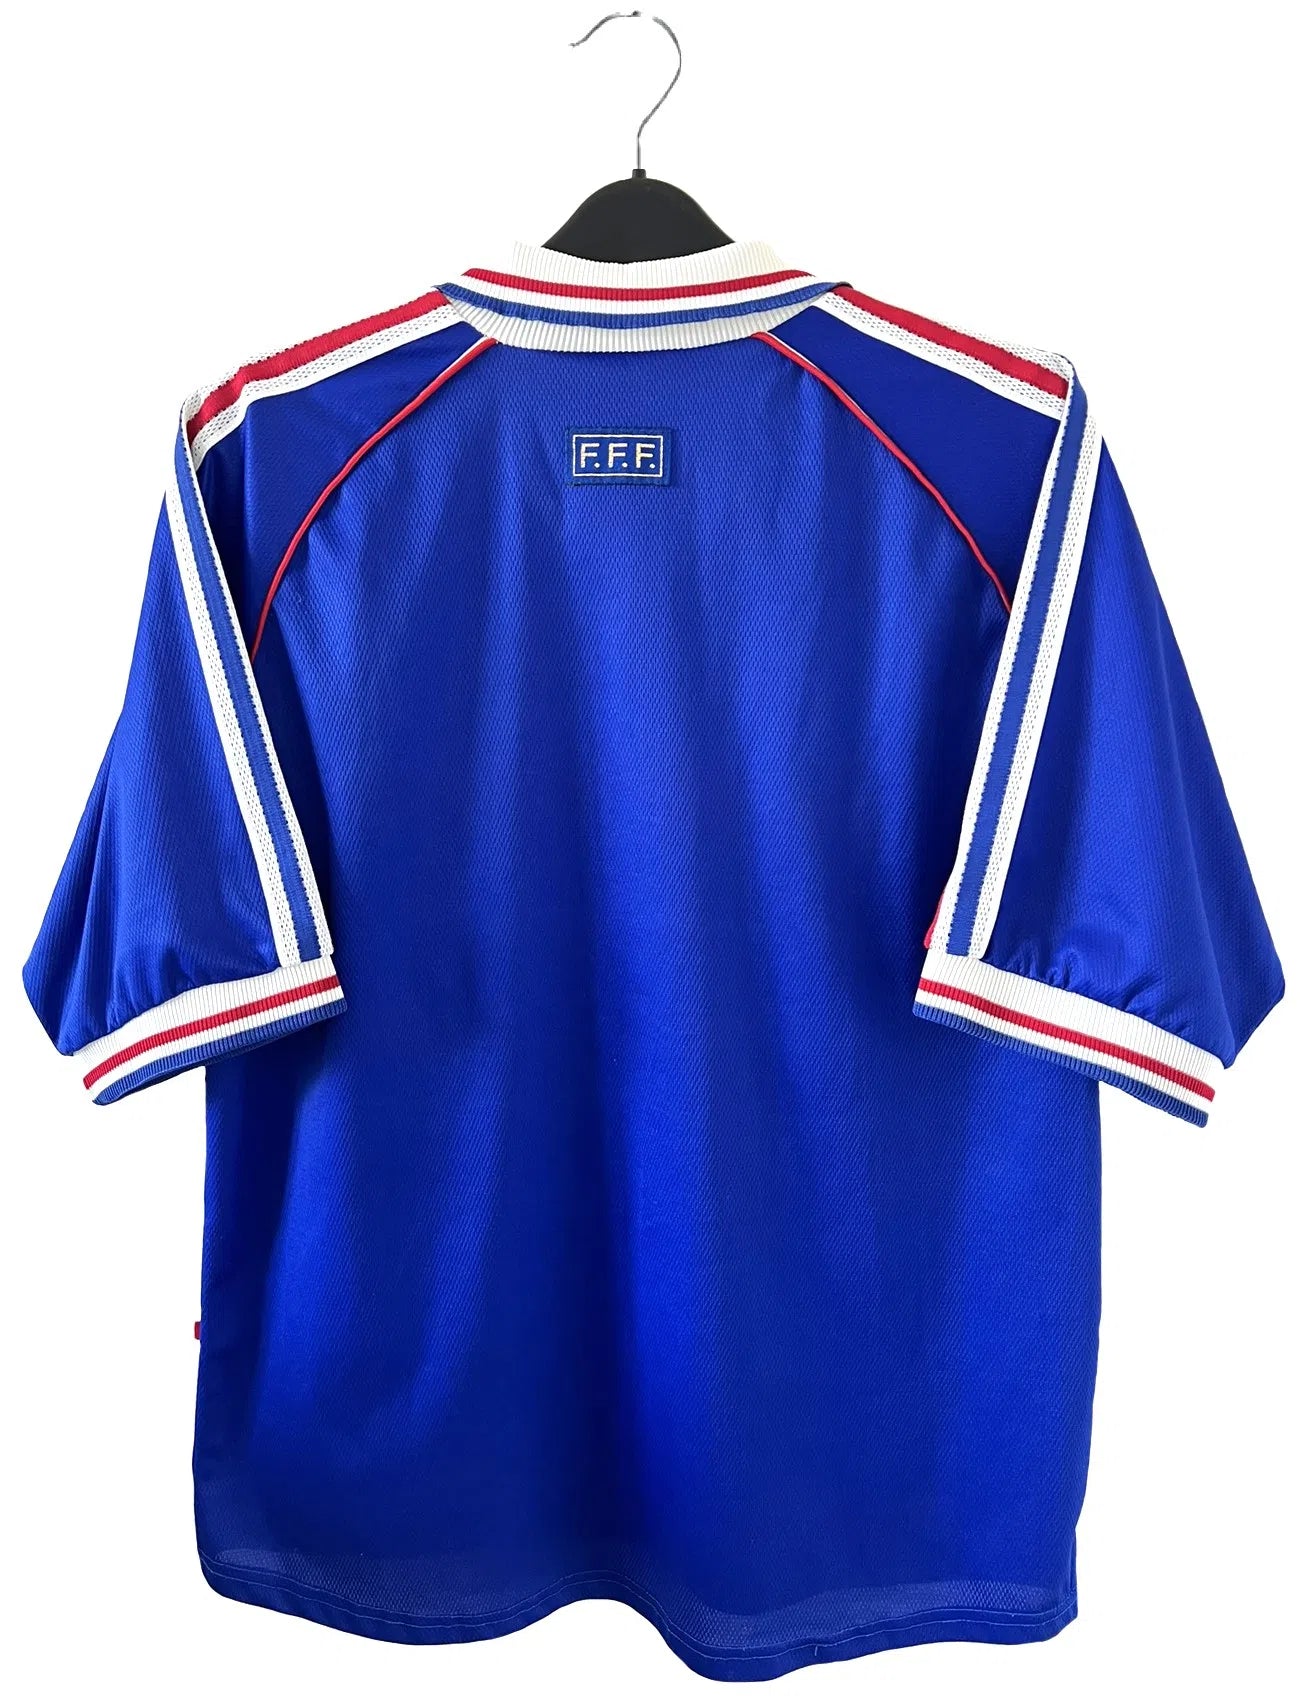 Maillot de foot vintage de l'équipe de france bleu blanc et rouge. Il s'agit du maillot domicile de la coupe du monde 1998. On peut retrouver l'équipementier adidas et le coq sans l'étoile. Le maillot possède la signature pour toi de Zinedine Zidane